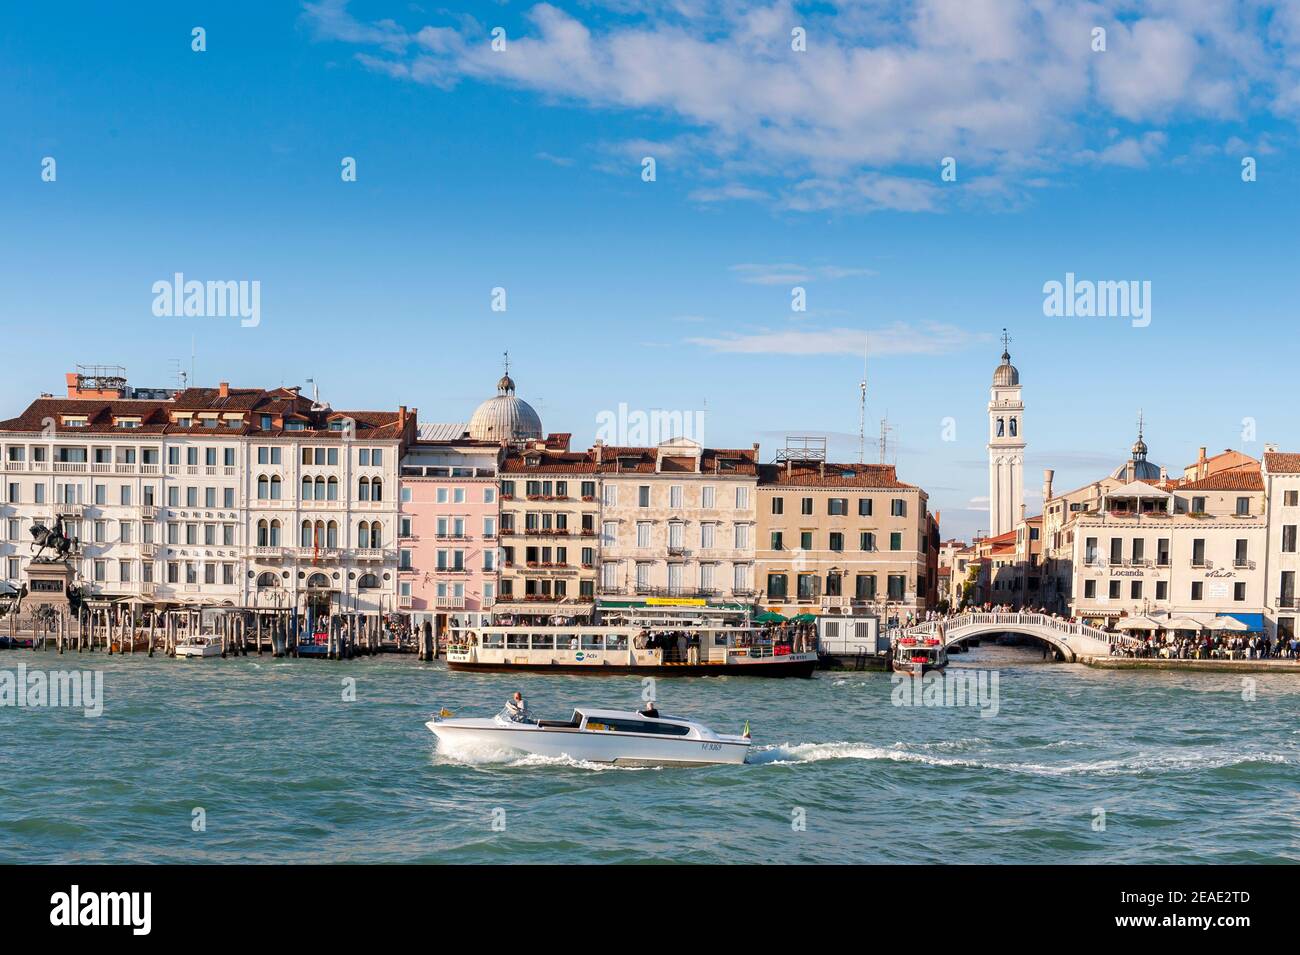 Schnellboot an Gebäuden in der schönen Stadt Venedig, Italien vorbei. Stockfoto